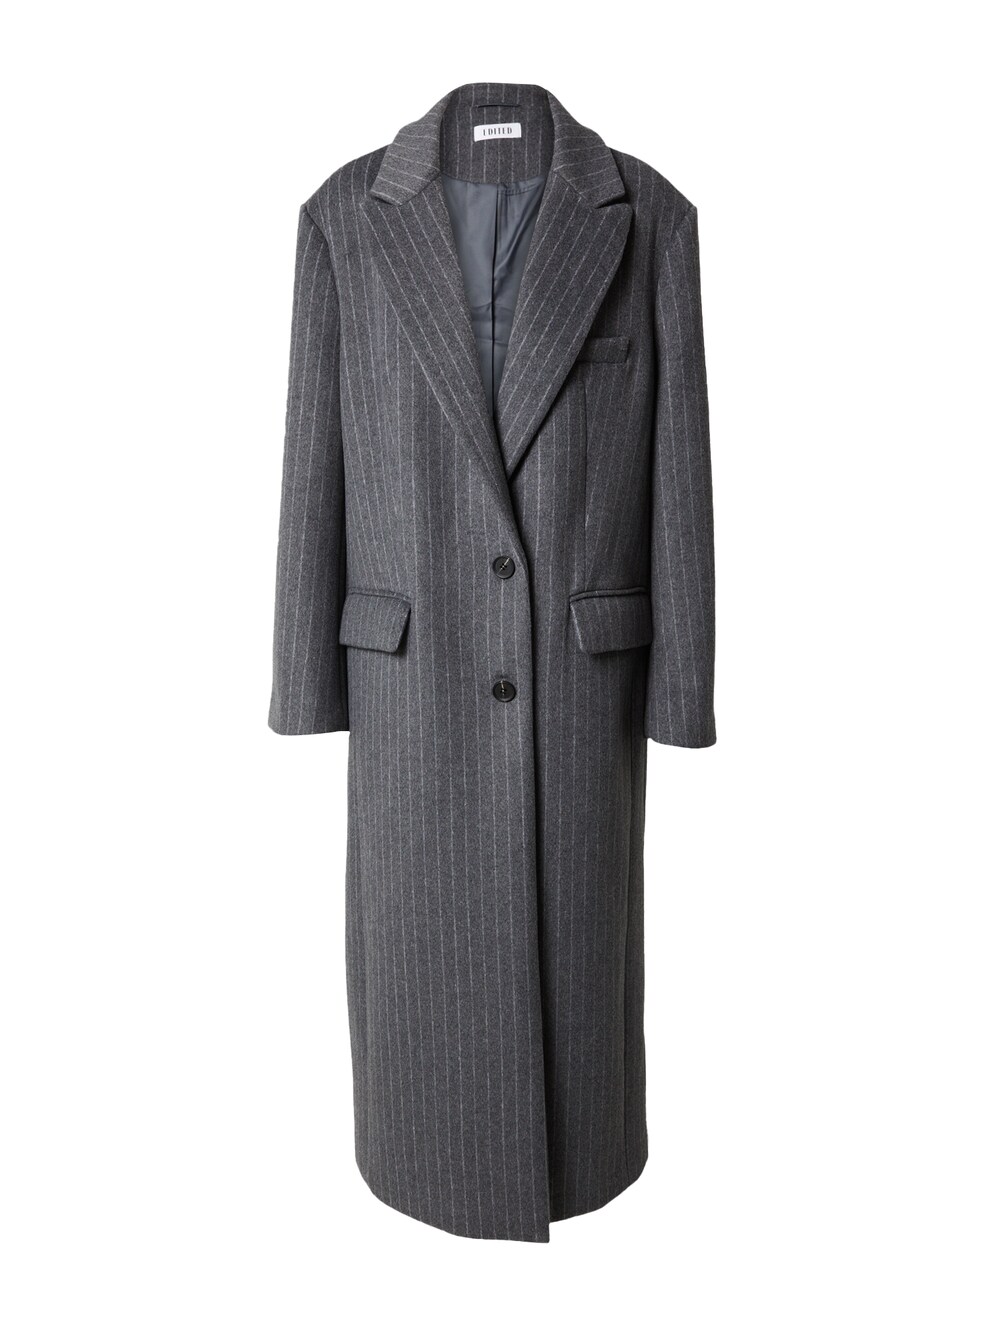 Межсезонное пальто EDITED Rylan, серый межсезонное пальто edited tosca пестрый серый